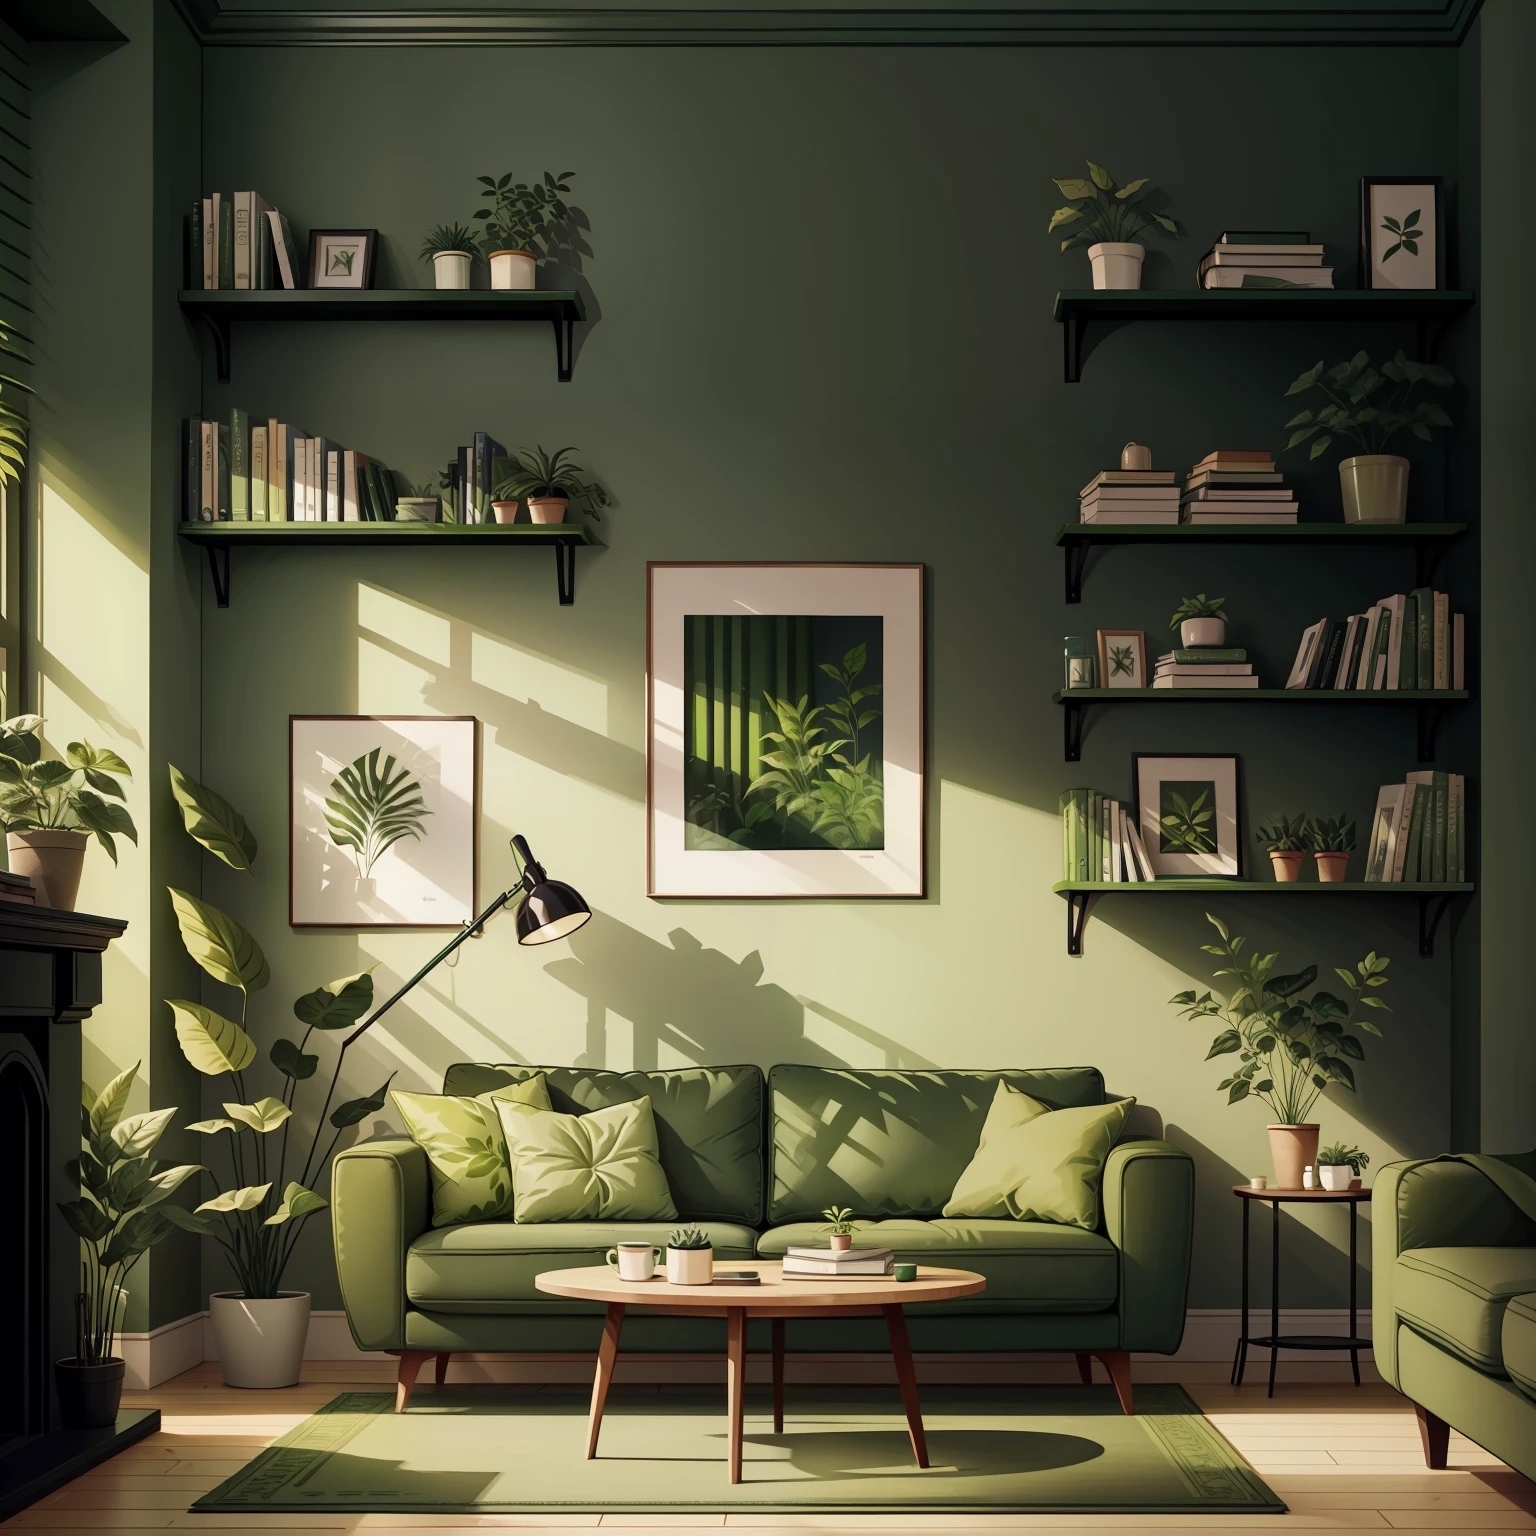 ห้องนั่งเล่นพร้อมโซฟาสีเขียวและต้นไม้สีเขียวบนผนัง และชั้นวางหนังสือพร้อมหนังสือ